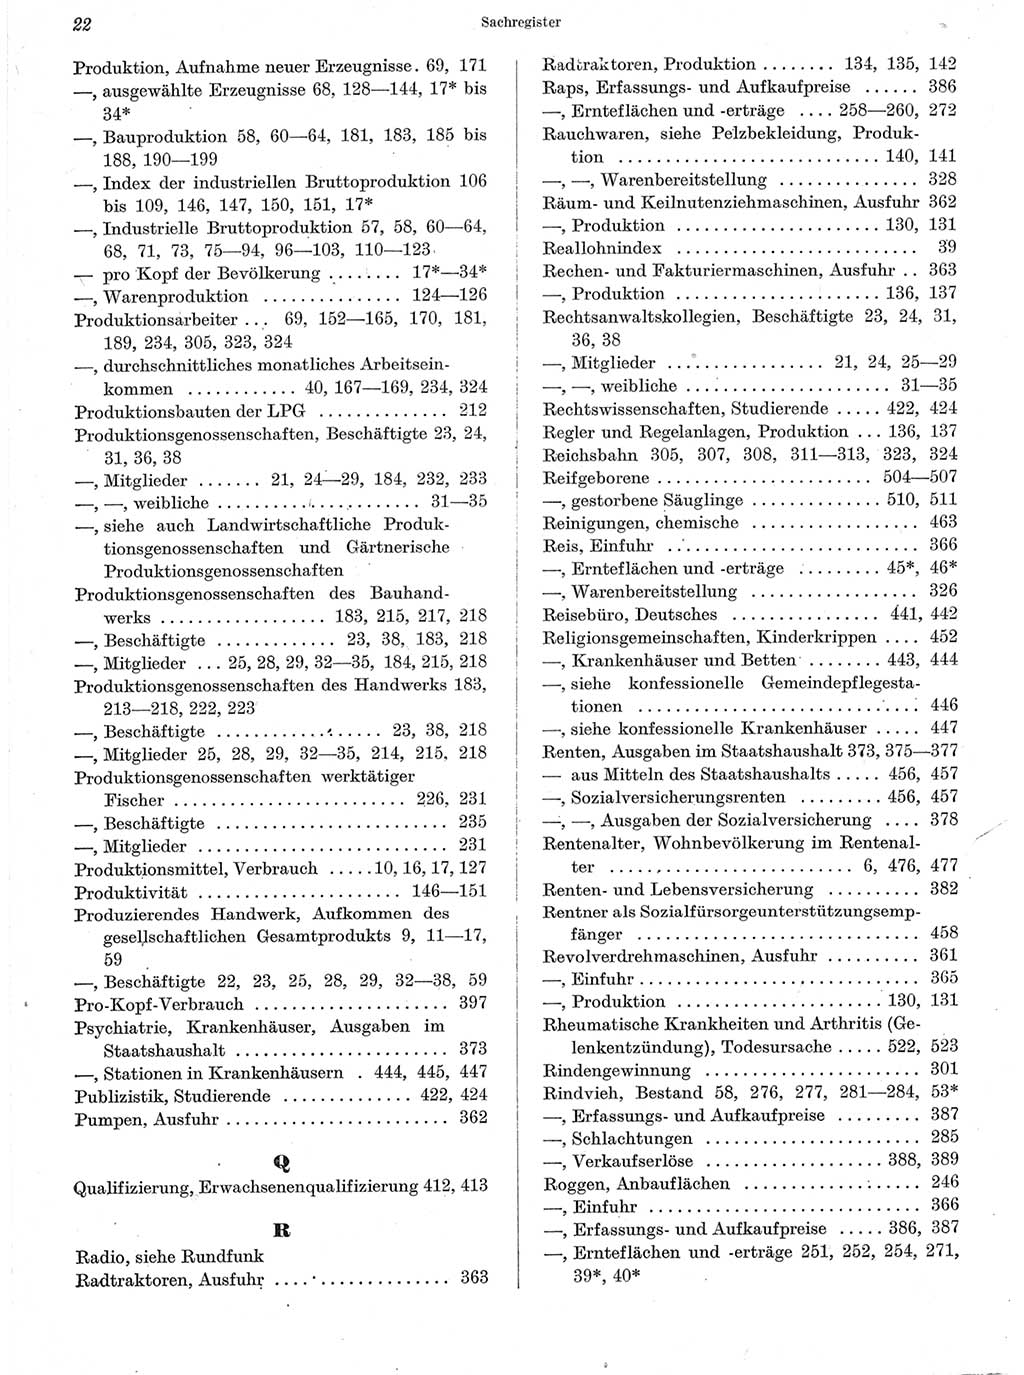 Statistisches Jahrbuch der Deutschen Demokratischen Republik (DDR) 1963, Seite 22 (Stat. Jb. DDR 1963, S. 22)